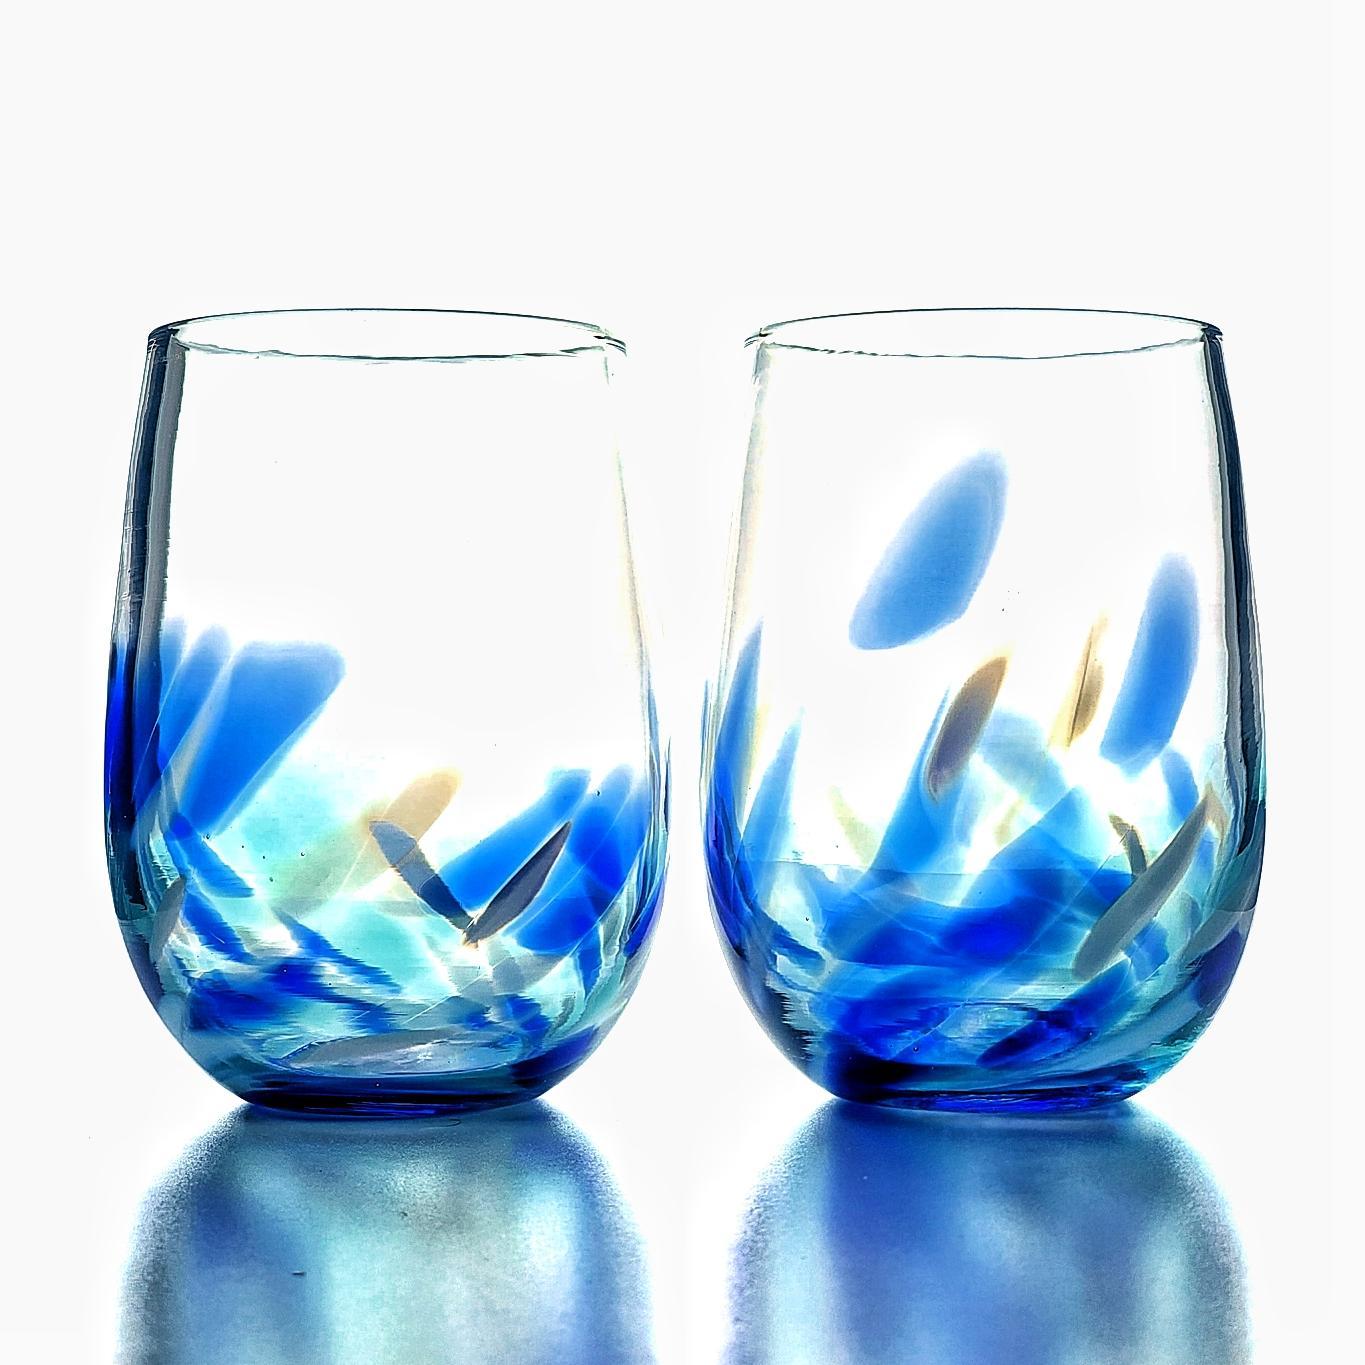 Berkware Set Of 4 Sparkling Blue Colored Stemless Wine Glass (19oz